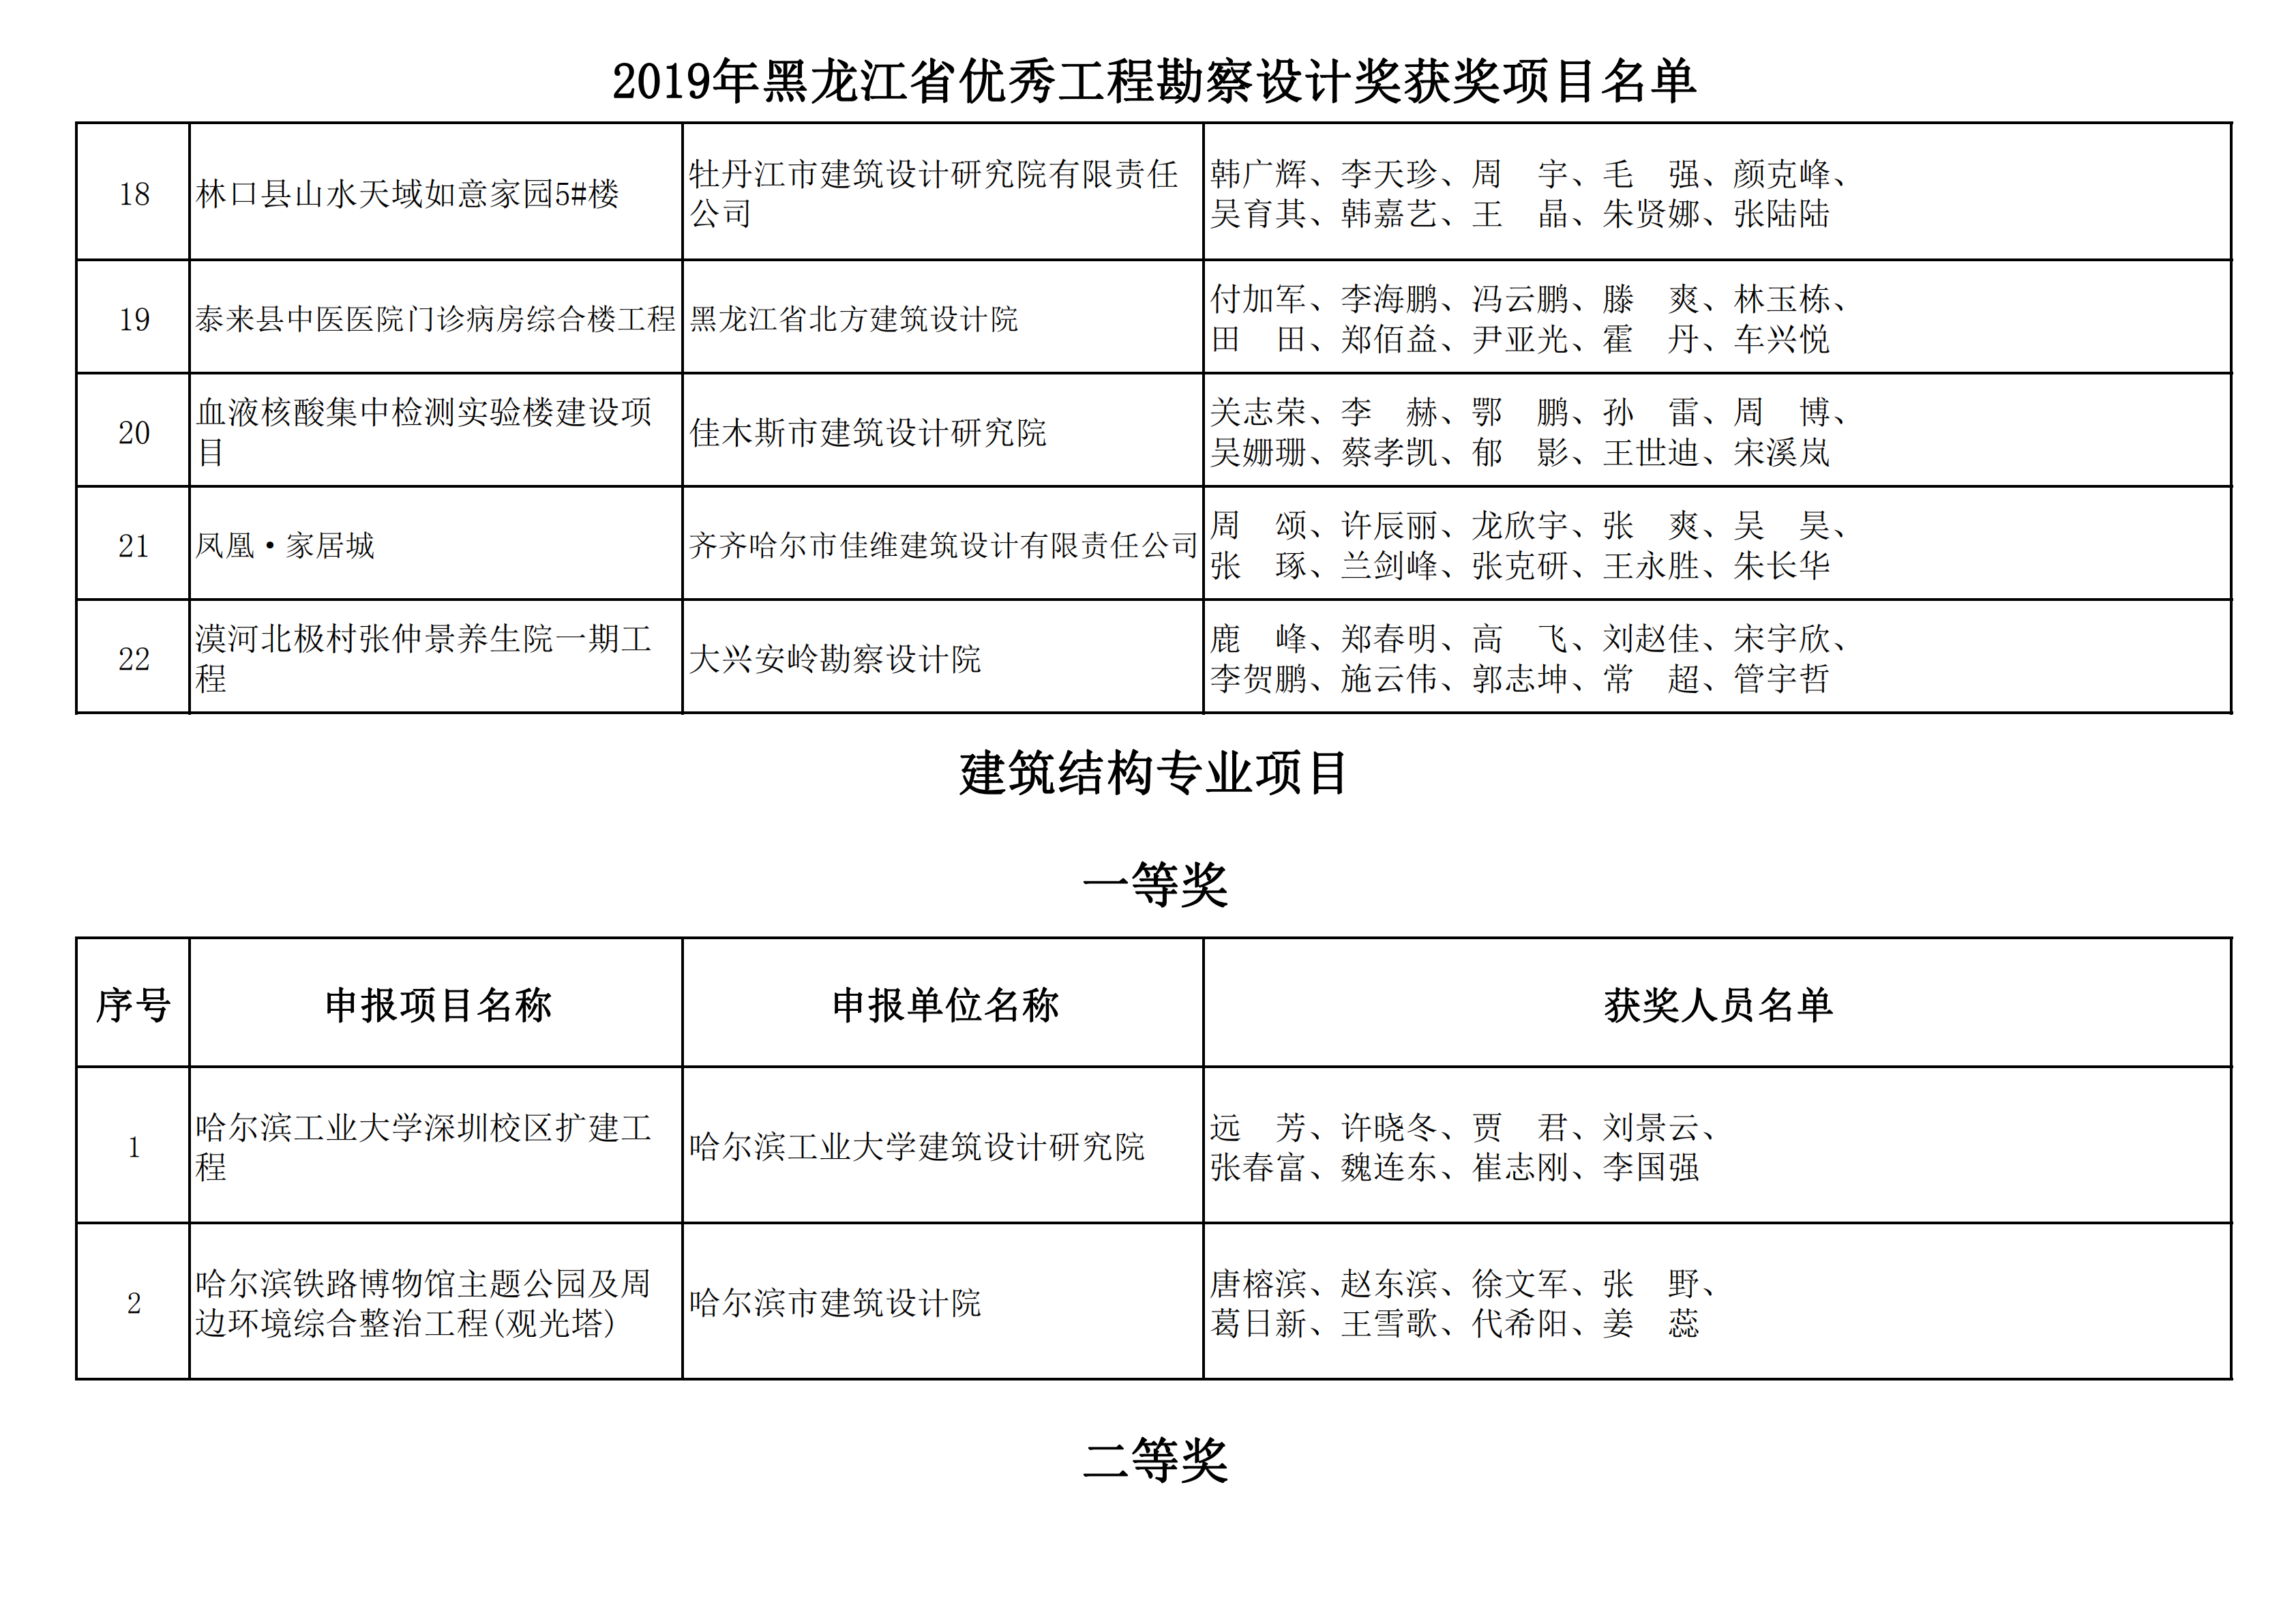 2019年黑龙江省优秀工程勘察设计奖获奖项目名单_04.png